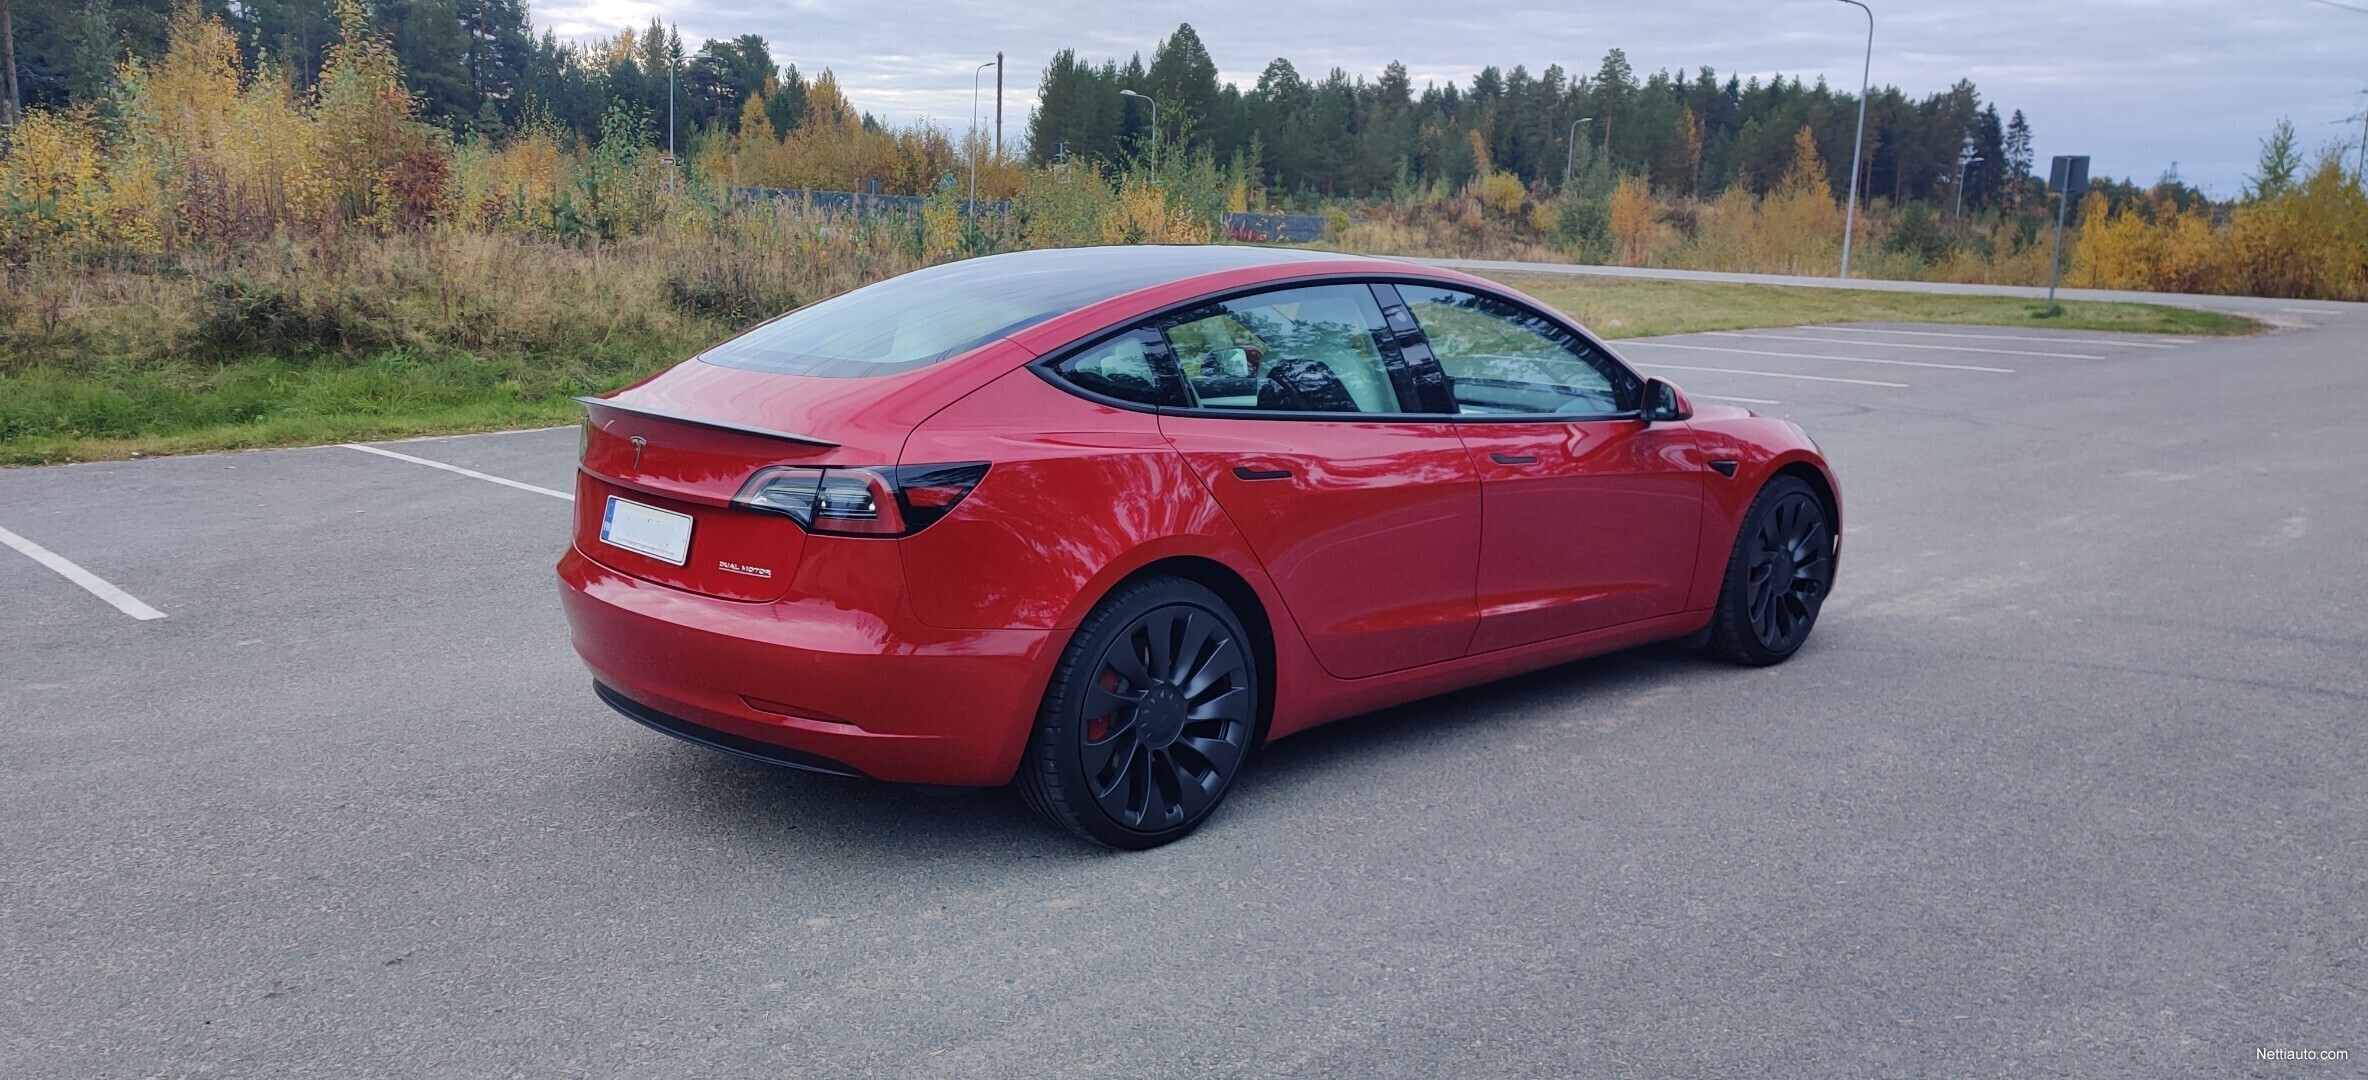 Tesla Model-3 Performance Dual, 2022 usagé à vendre à $64,995 (R23675A)